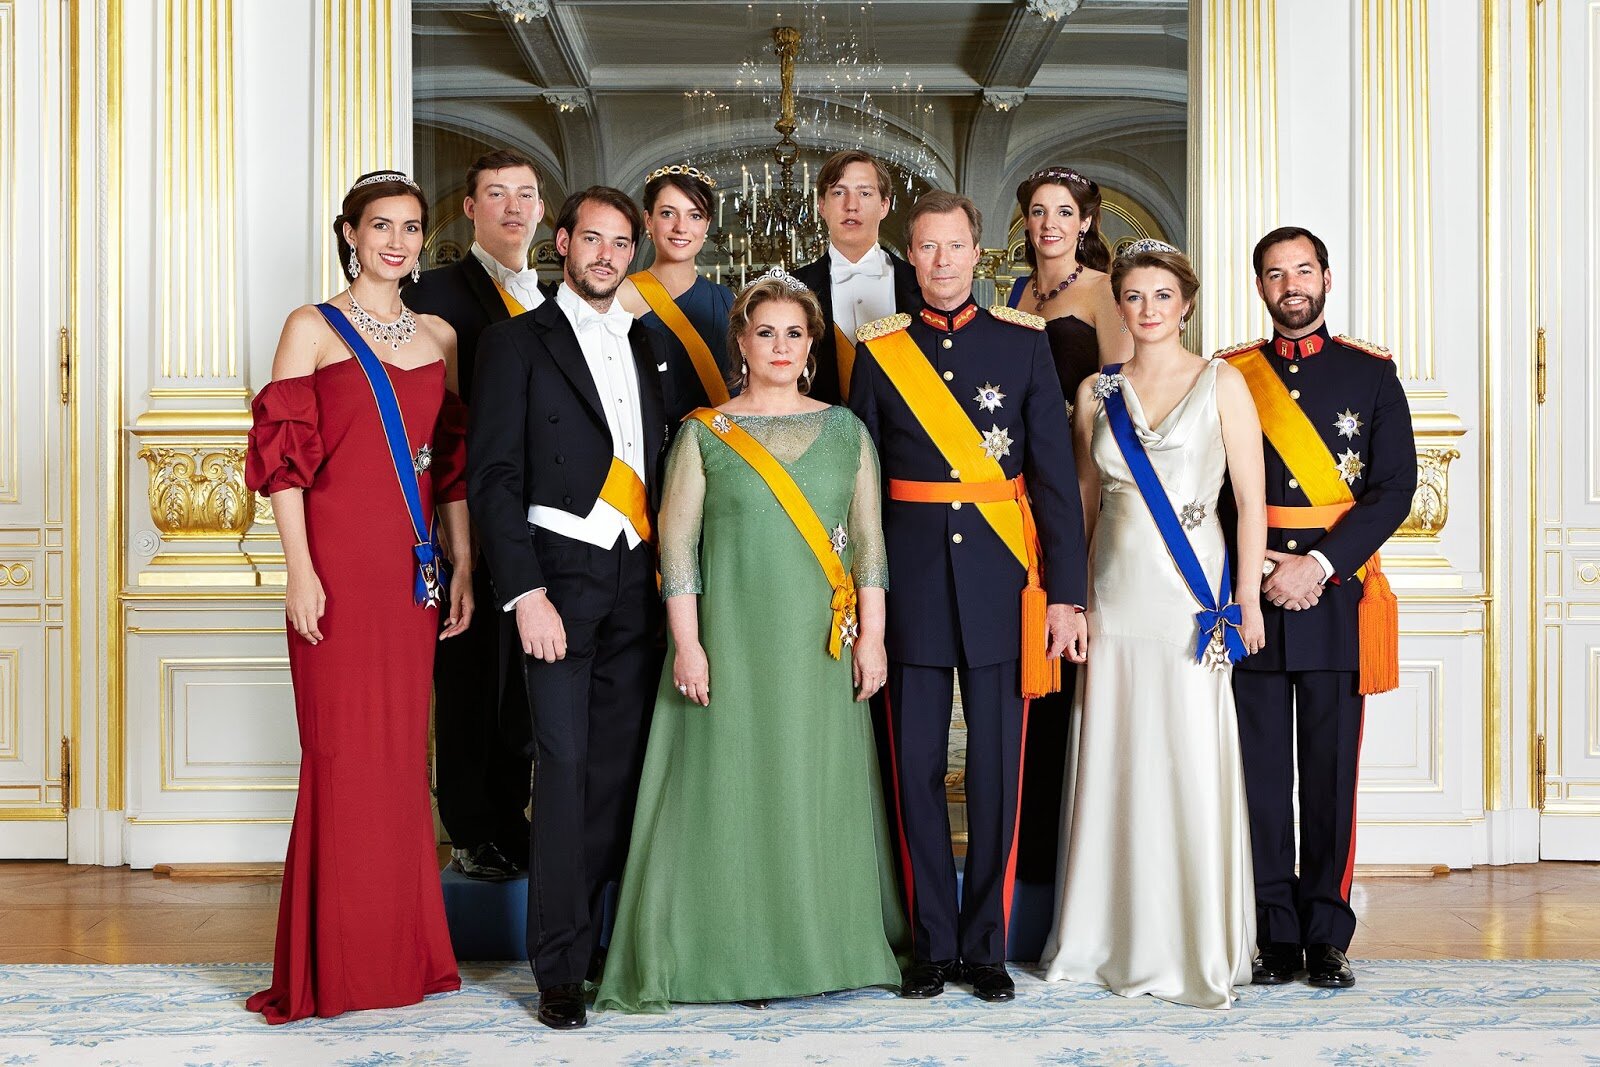 Злодейка пленила великого герцога 8. Анри (Великий герцог Люксембурга). Люксембург монаршая семья. Семья герцога Люксембурга. Люксембург герцог Анри и семья.